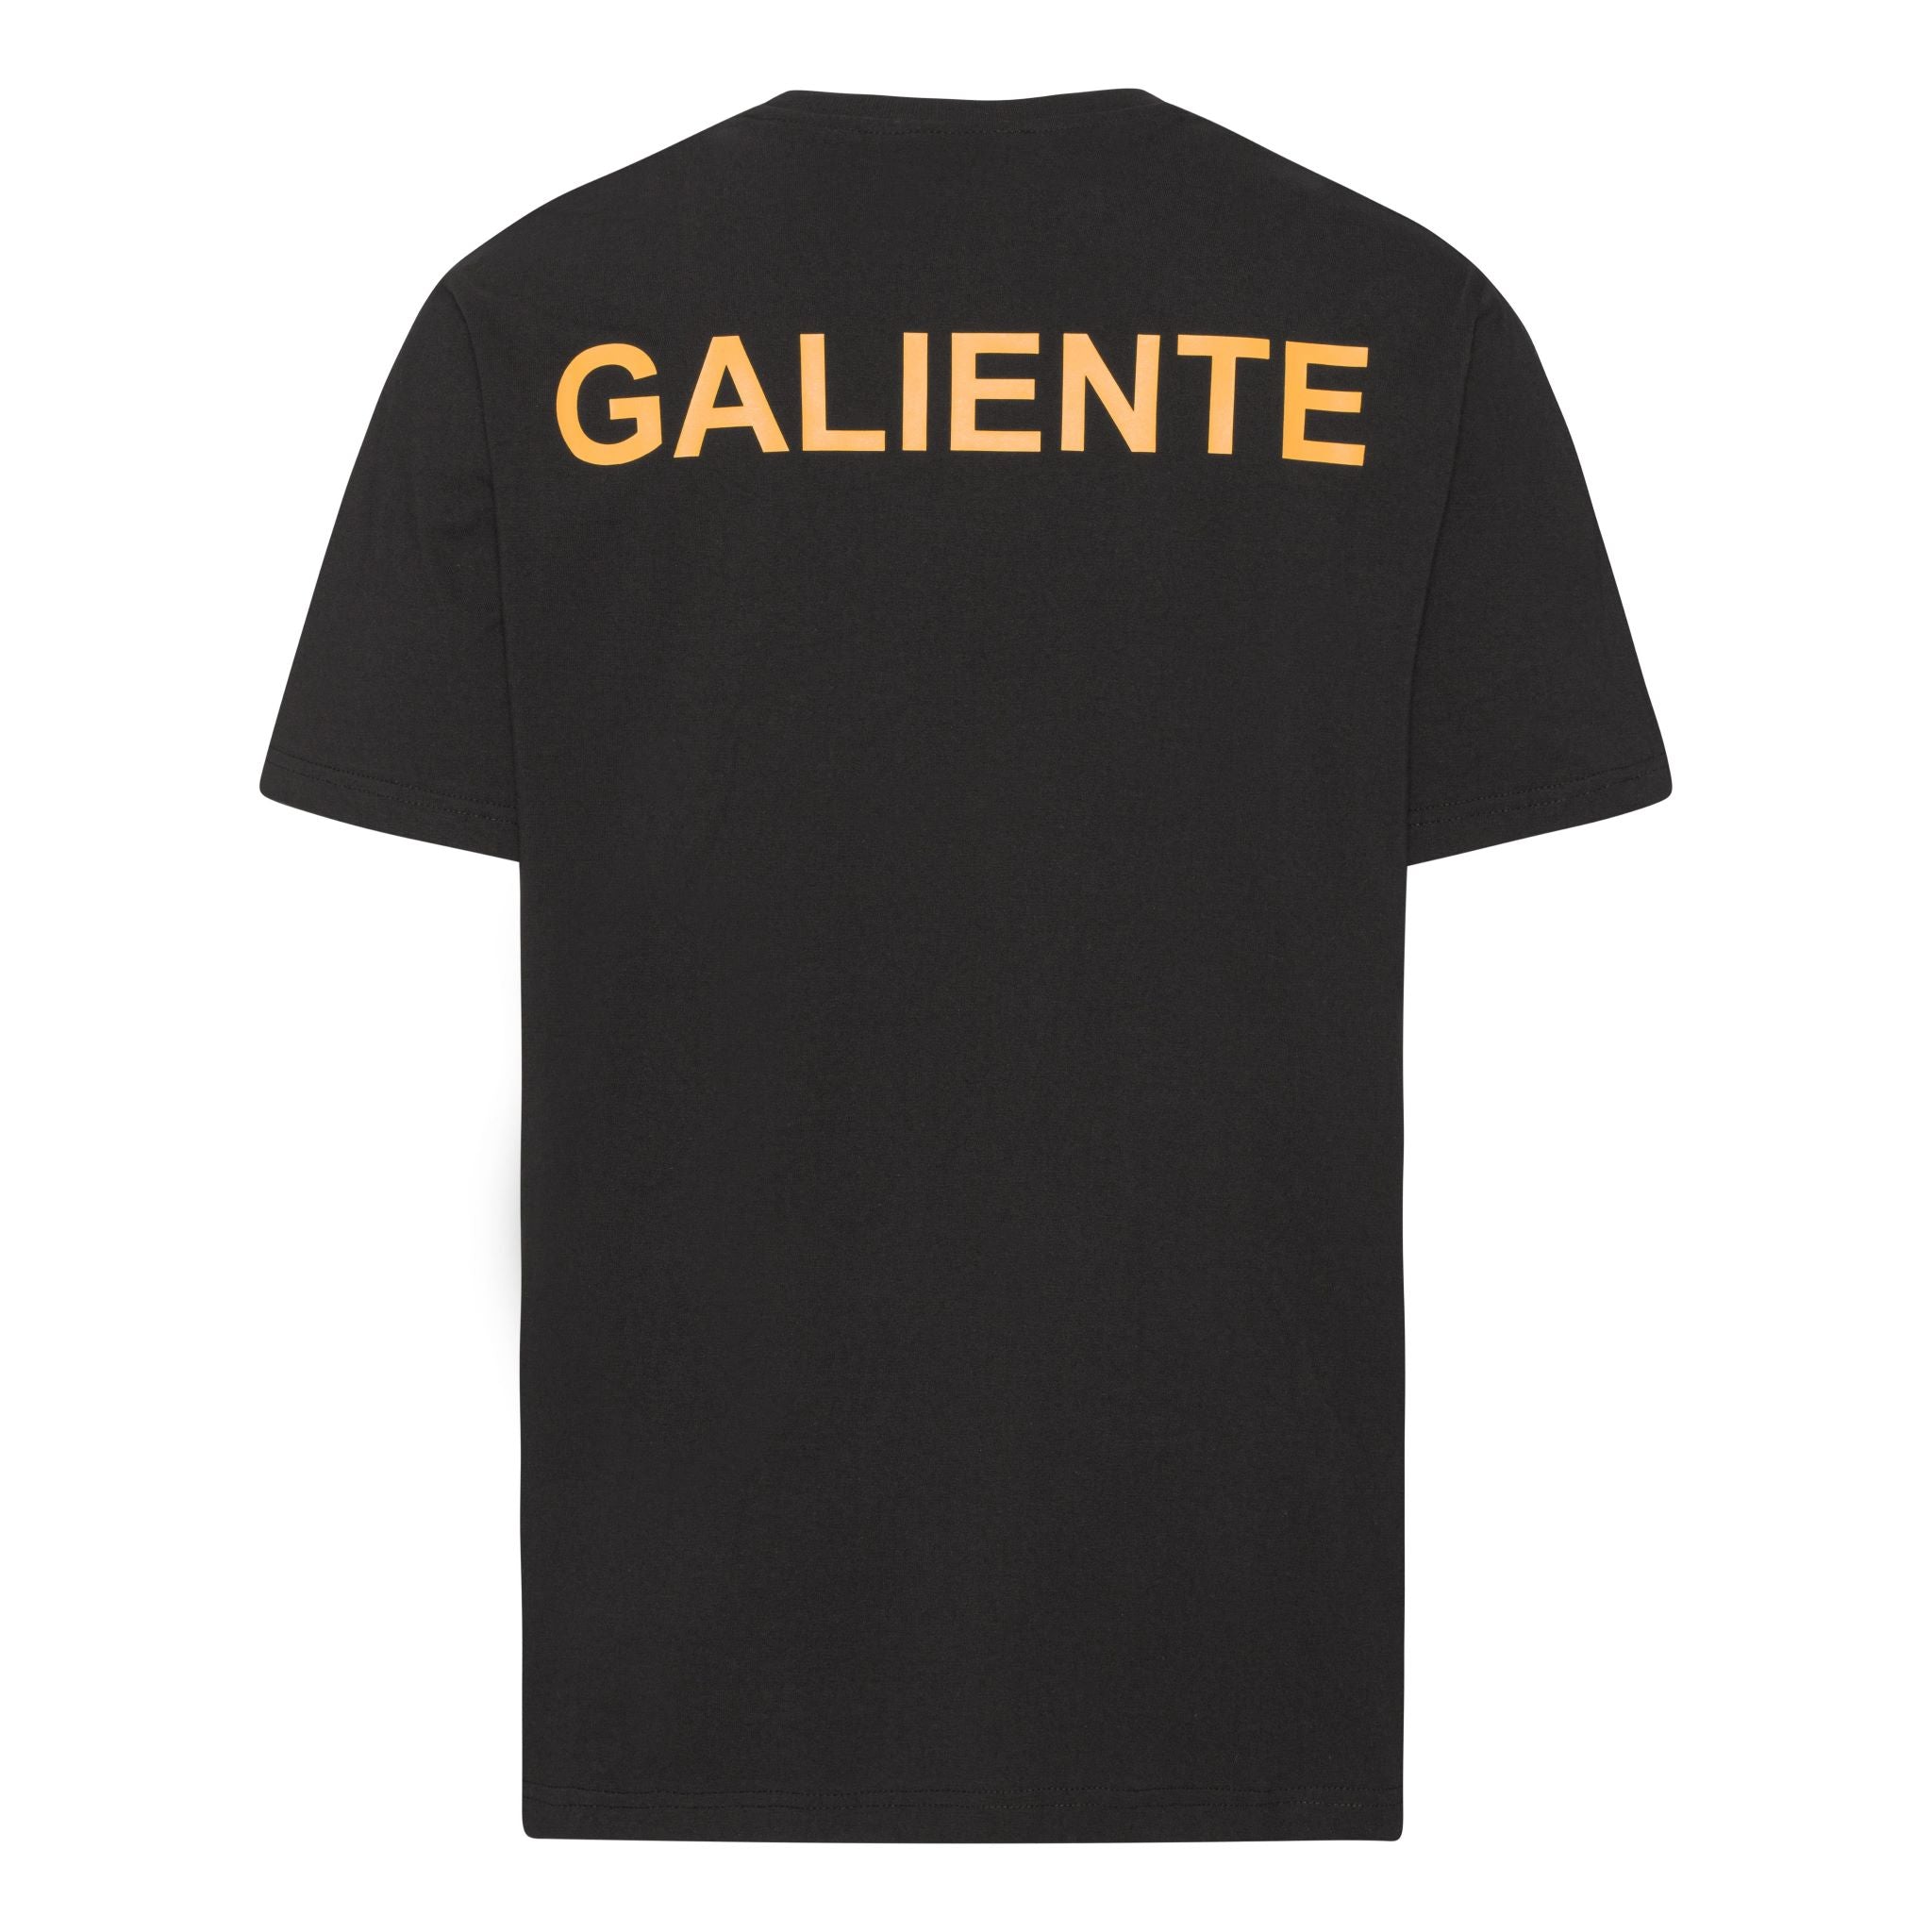 Oversize sort T-shirt med gult logo print